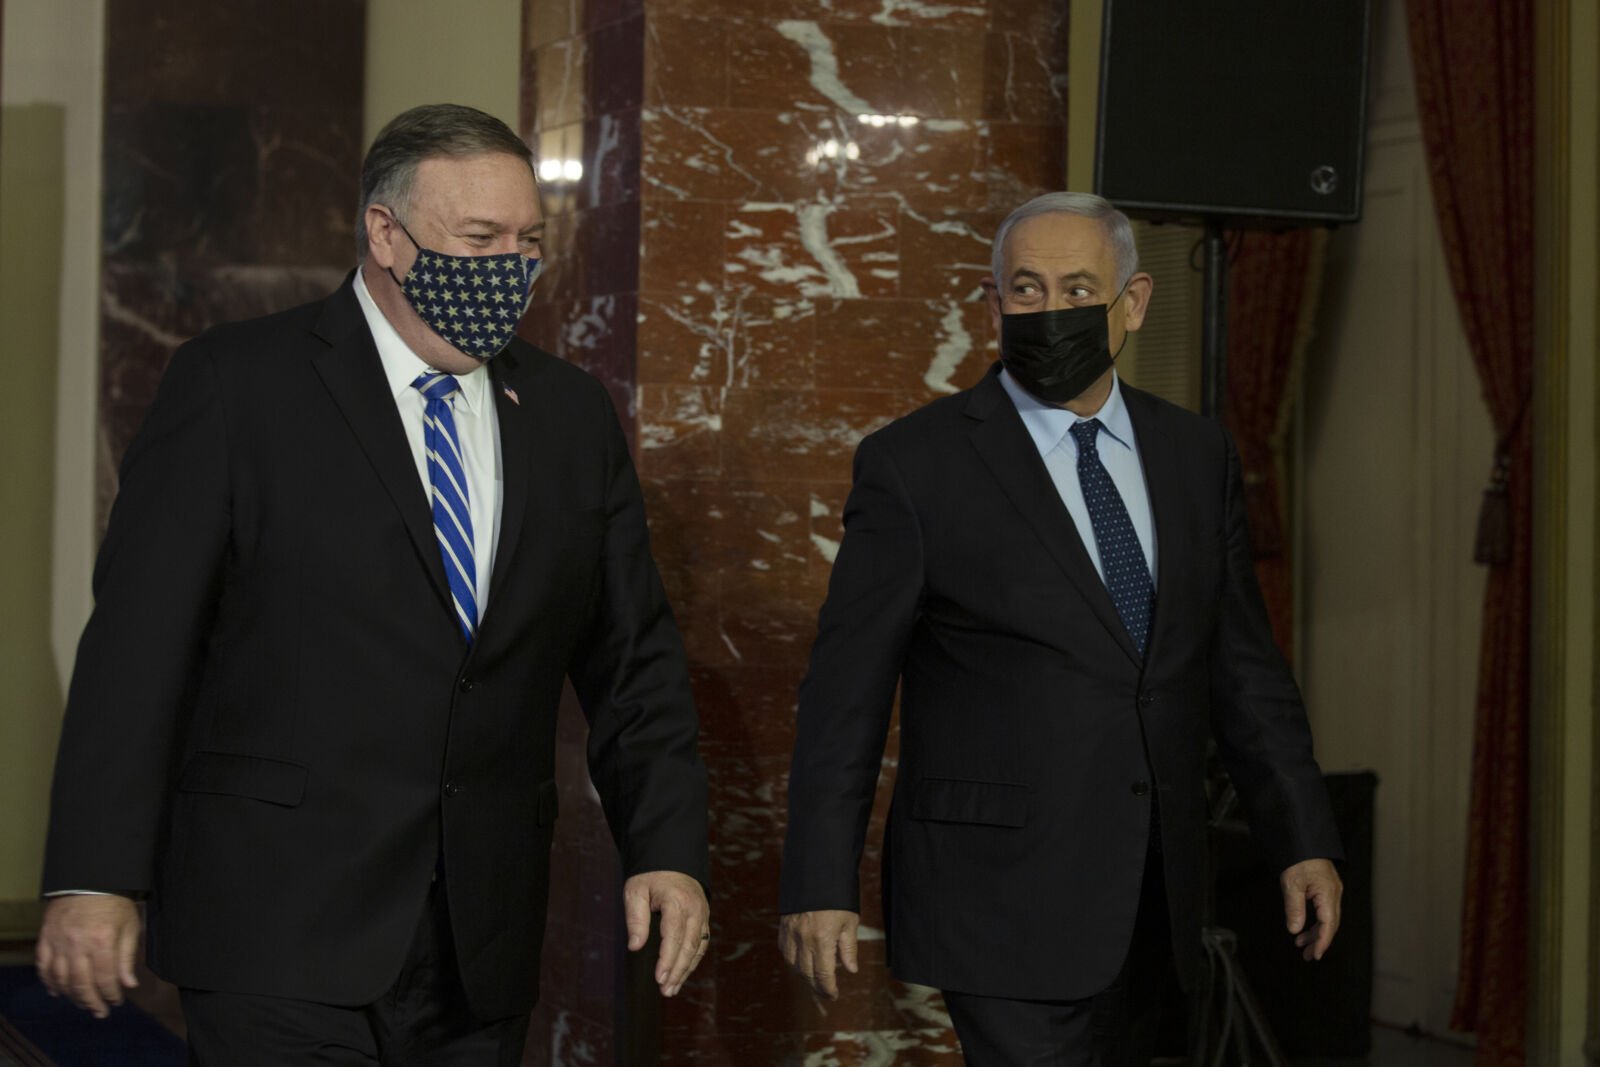 מזכיר המדינה האמריקאי מייק פומפאו (משמאל) עם רה"מ בנימין נתניהו, ירושלים, 9.11.2020 (צילום: מאיה אלרוזו)